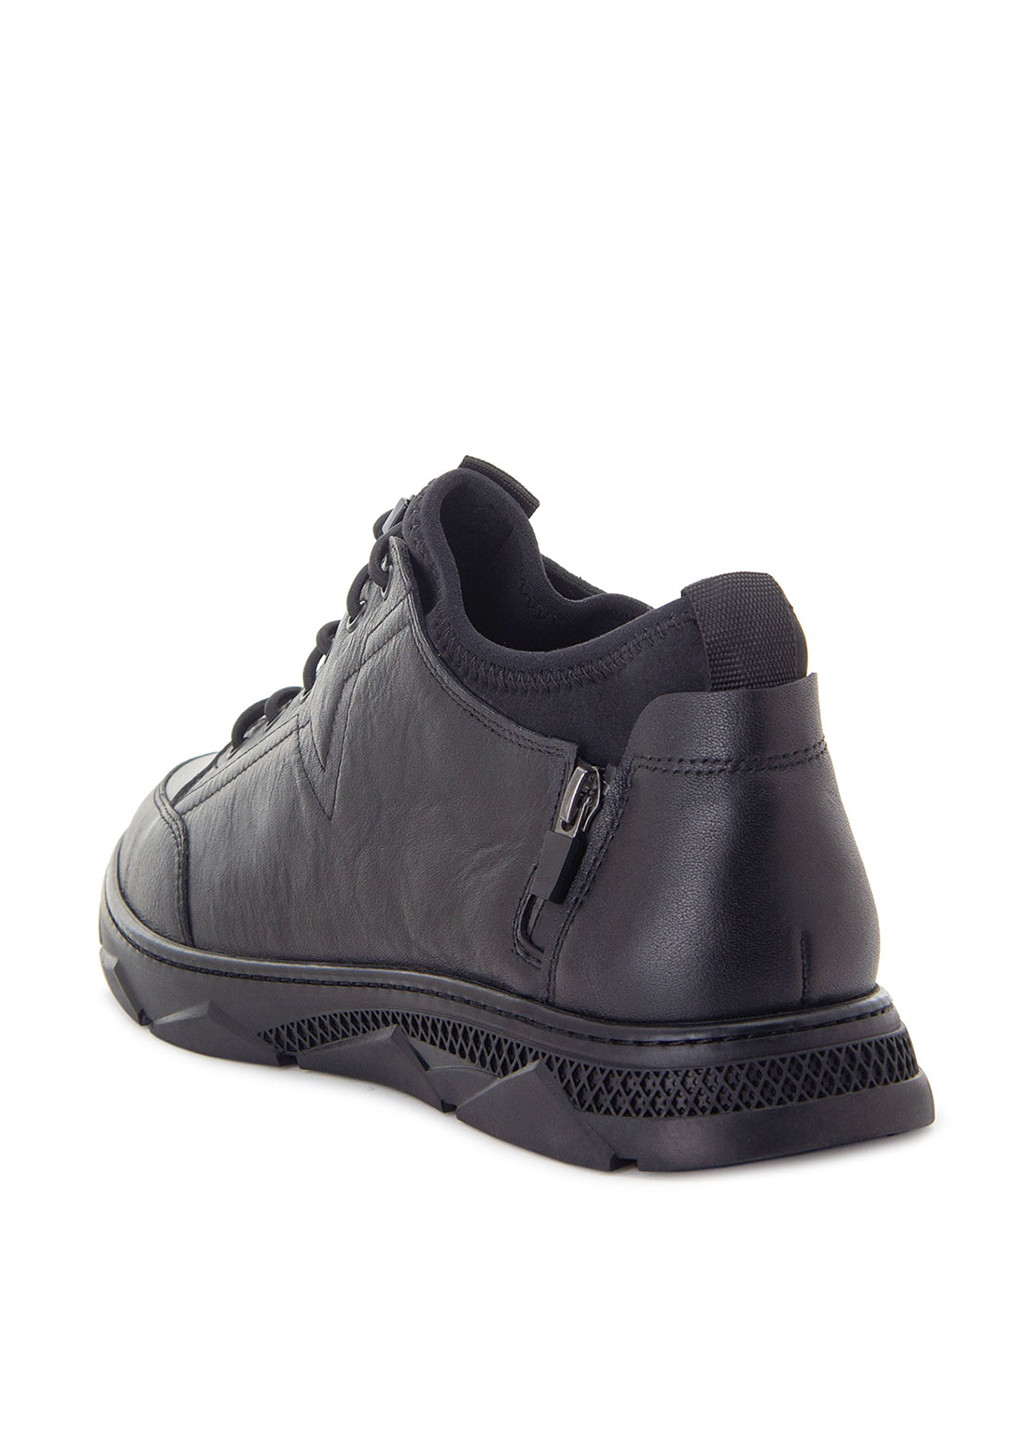 Черные осенние ботинки Tomfrie